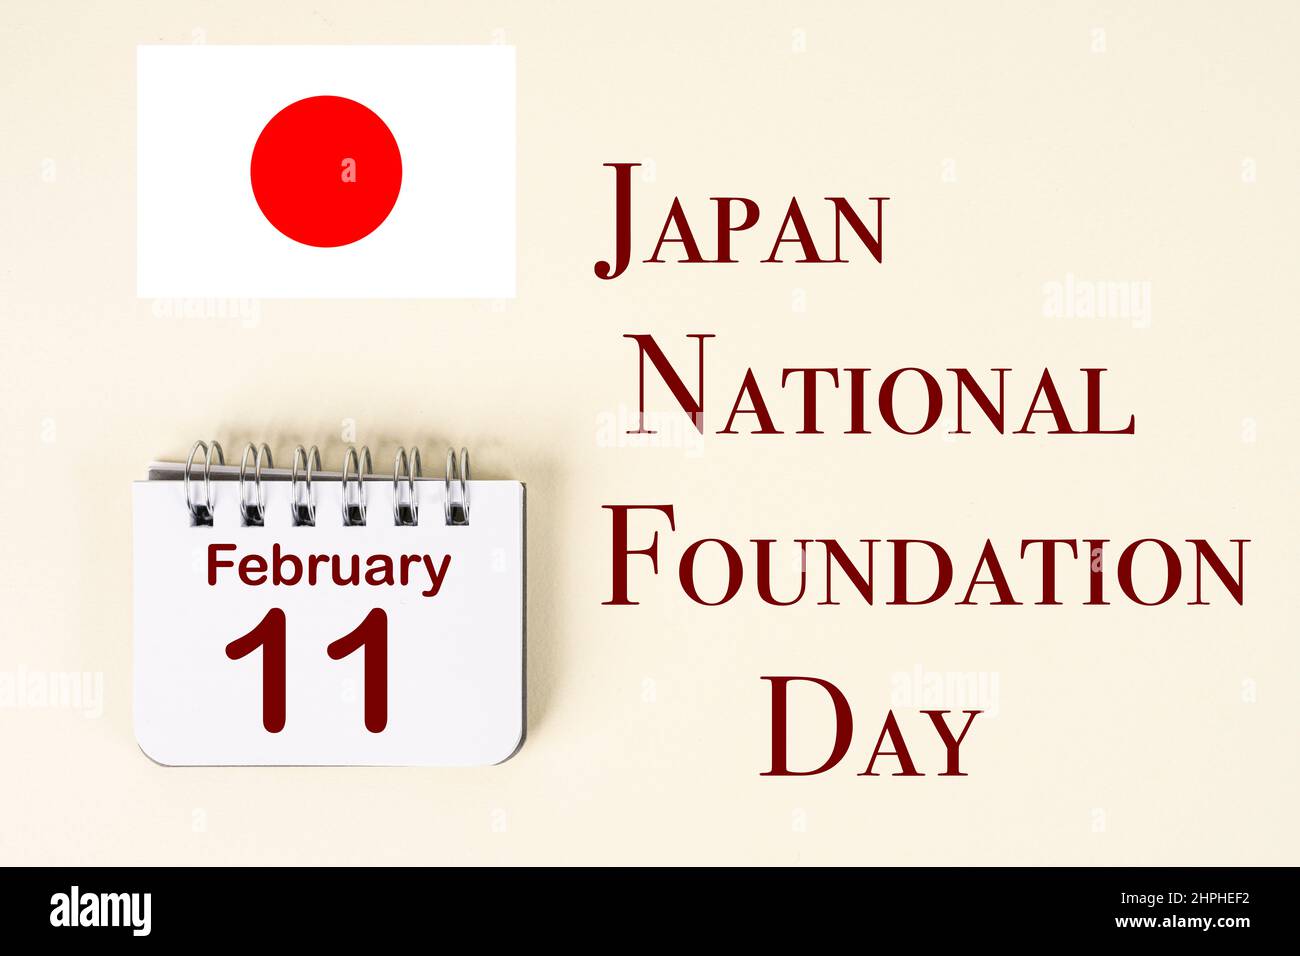 Die Feier des Japan National Foundation Day mit der Japan-Flagge und dem Kalender, der den 11. Februar anzeigt Stockfoto